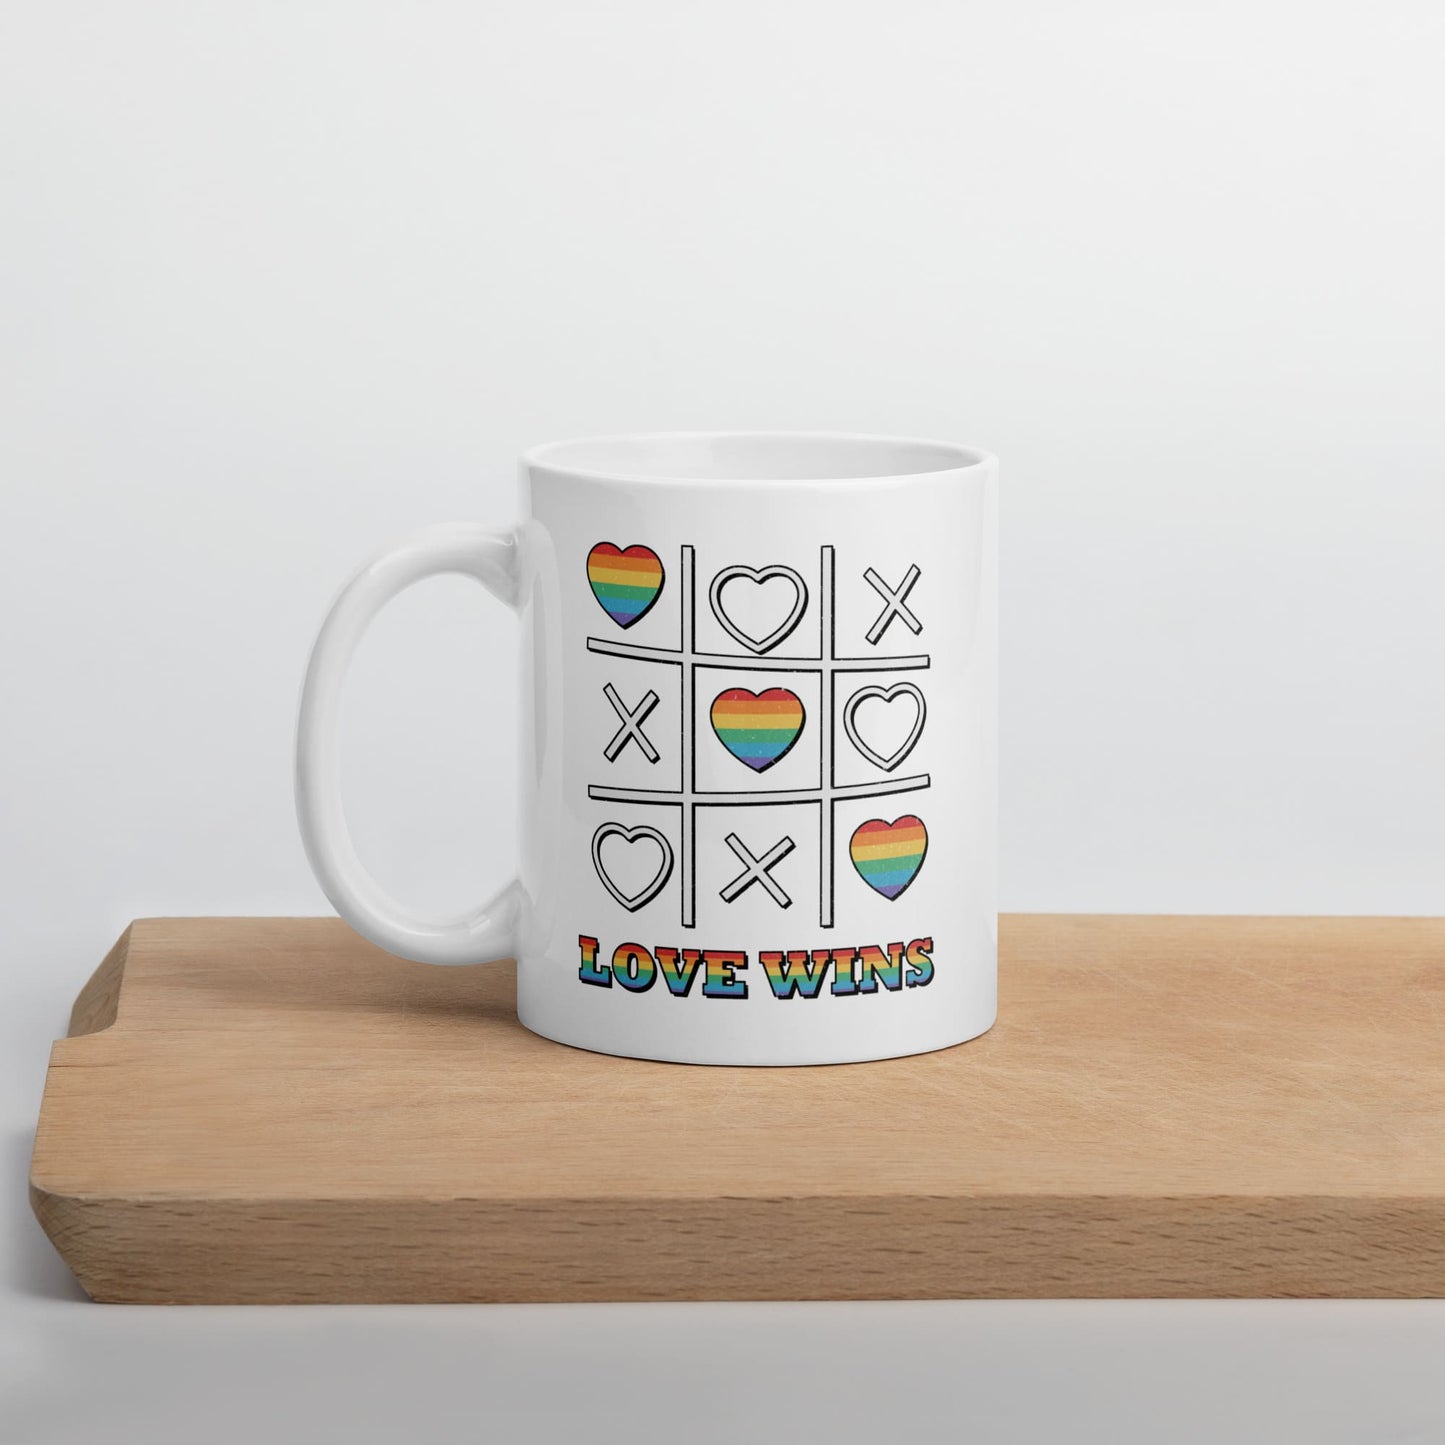 LGBT mug, love wins pride coffee or tea cup on table